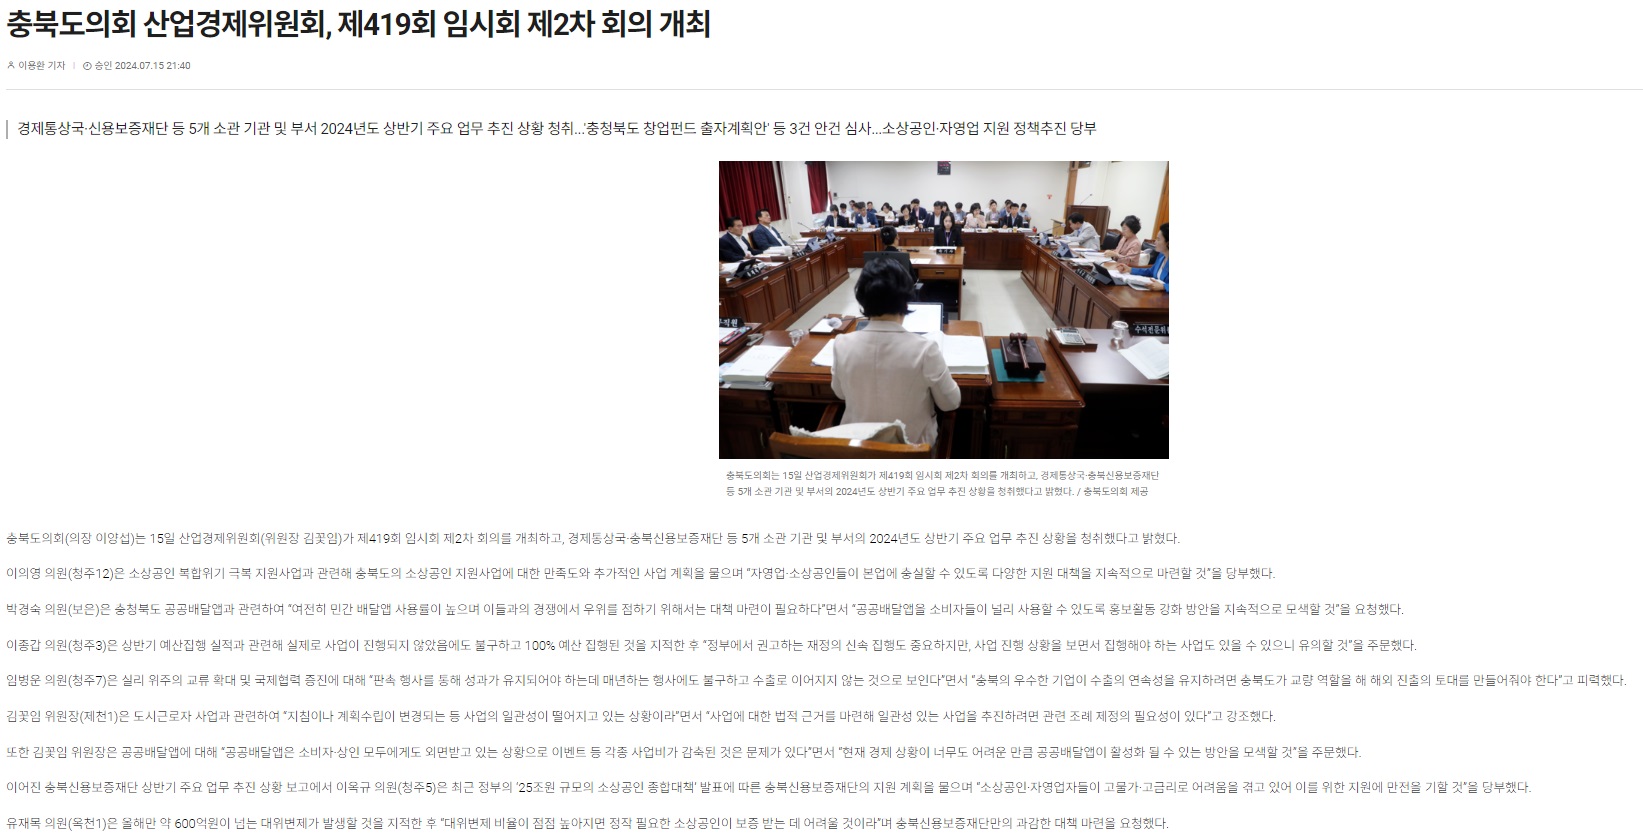 산업경제위원회 제419회 임시회 2차 회의 개최 - 2